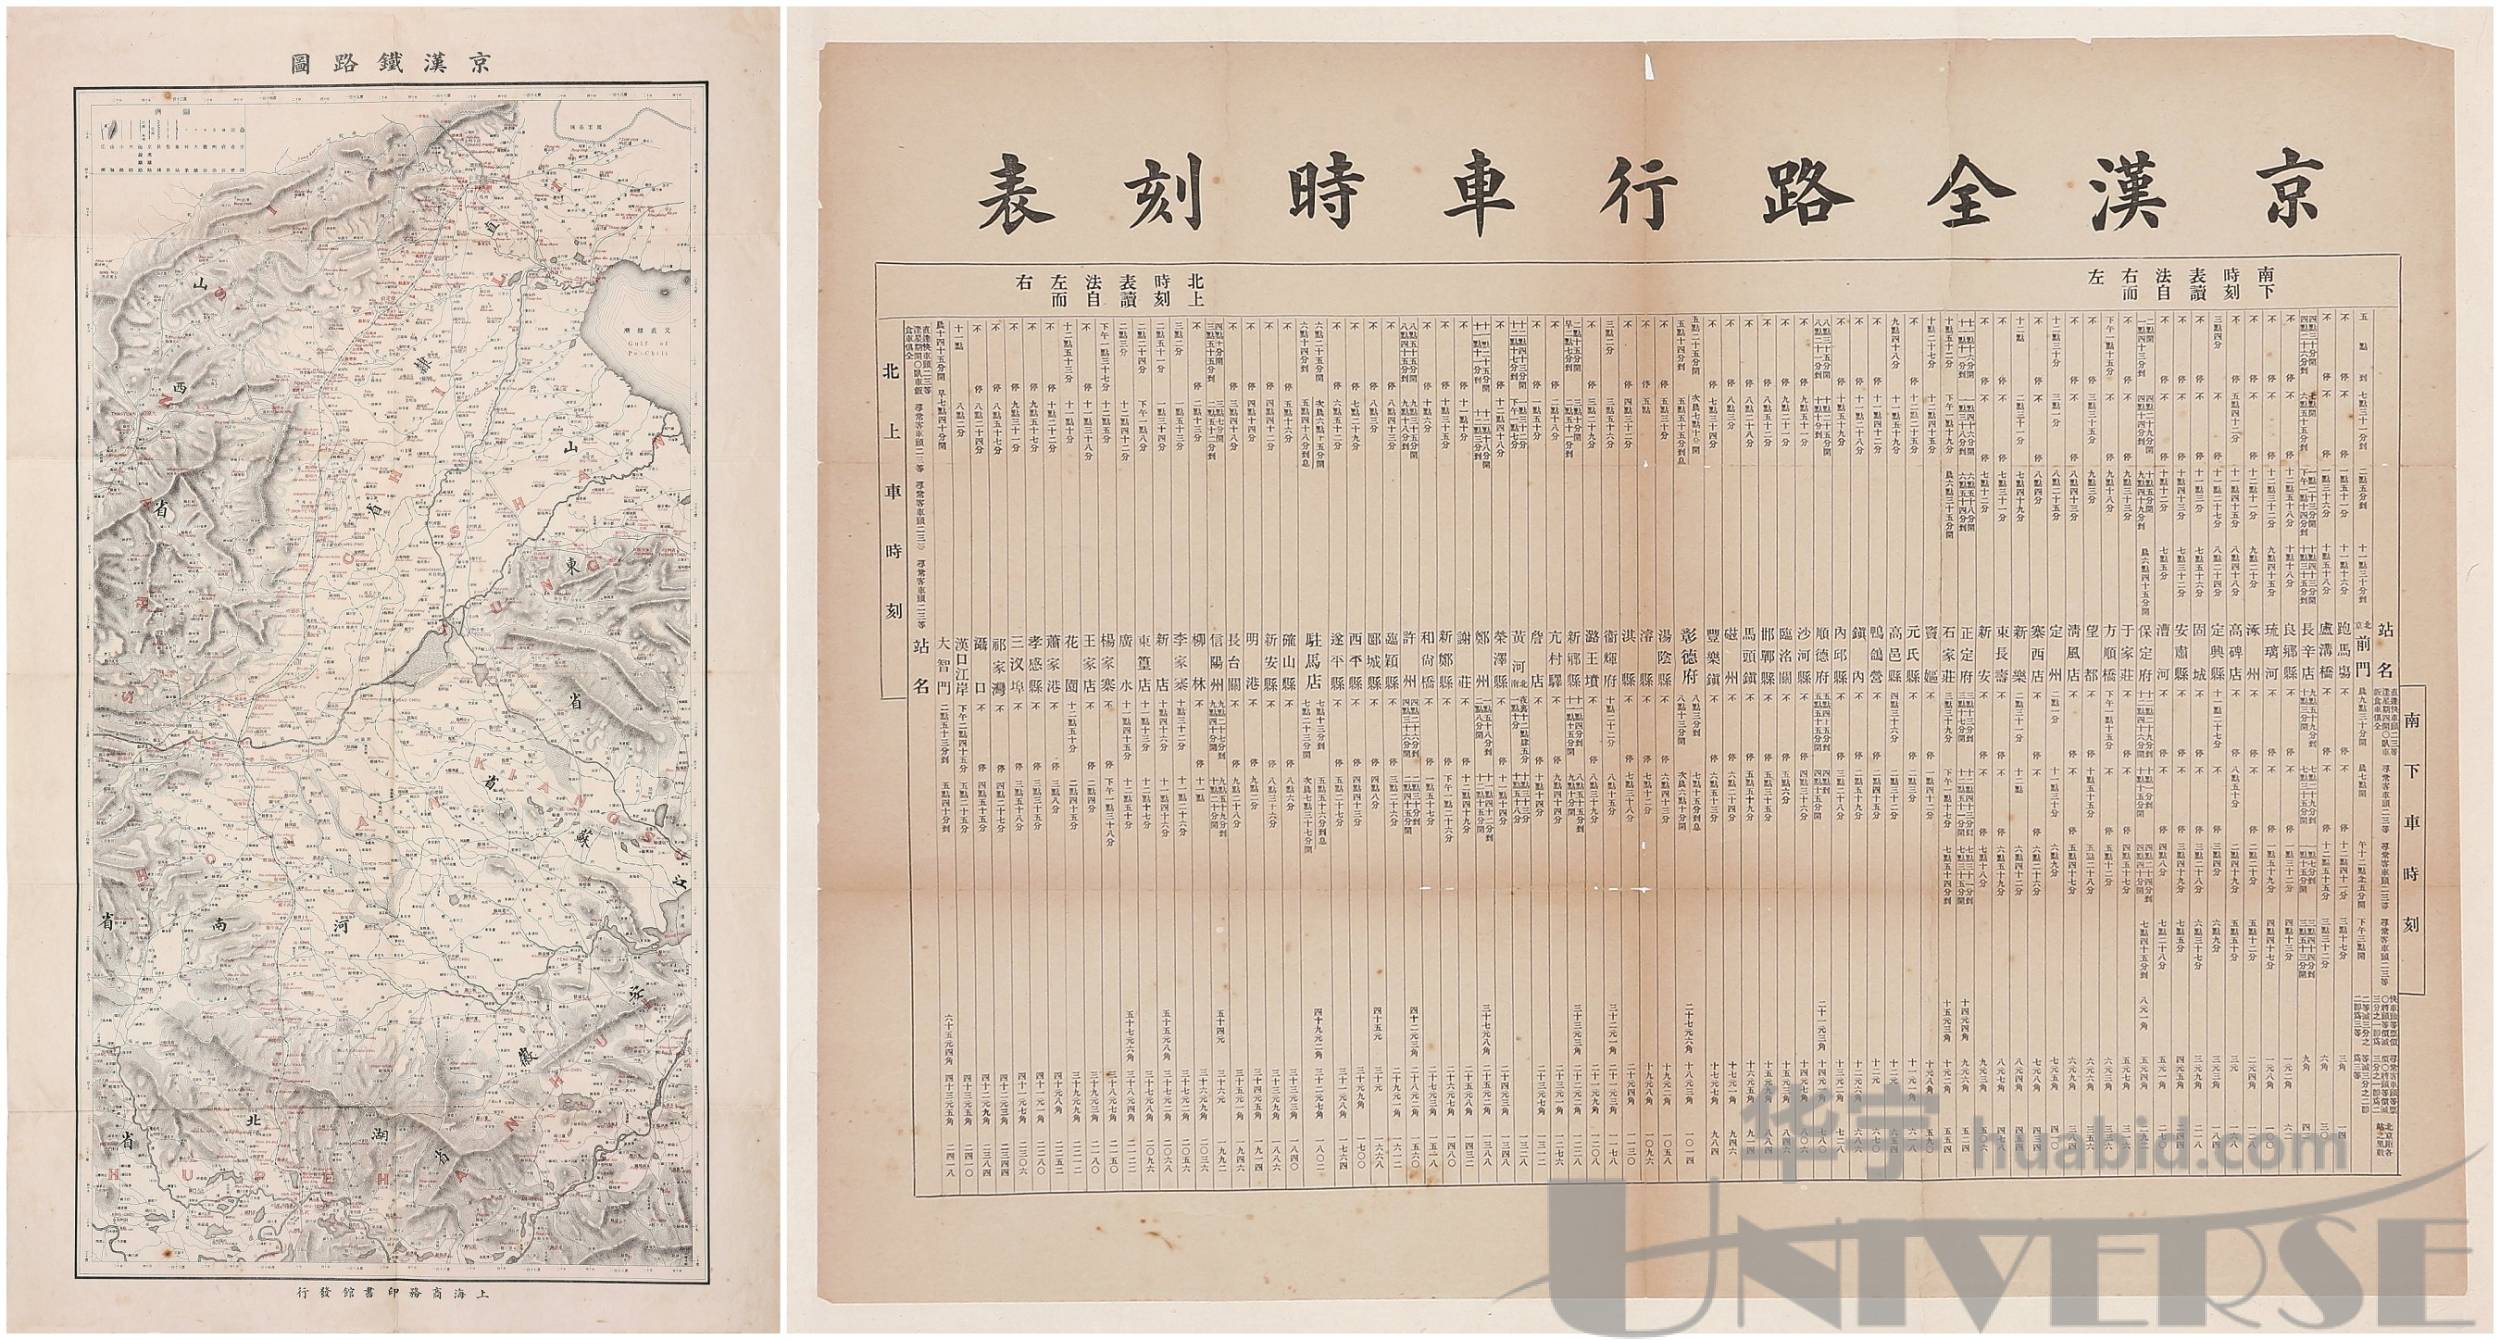 清光绪三十四年(1909年)上海商务印书馆发行京汉铁路图一幅及京汉铁路